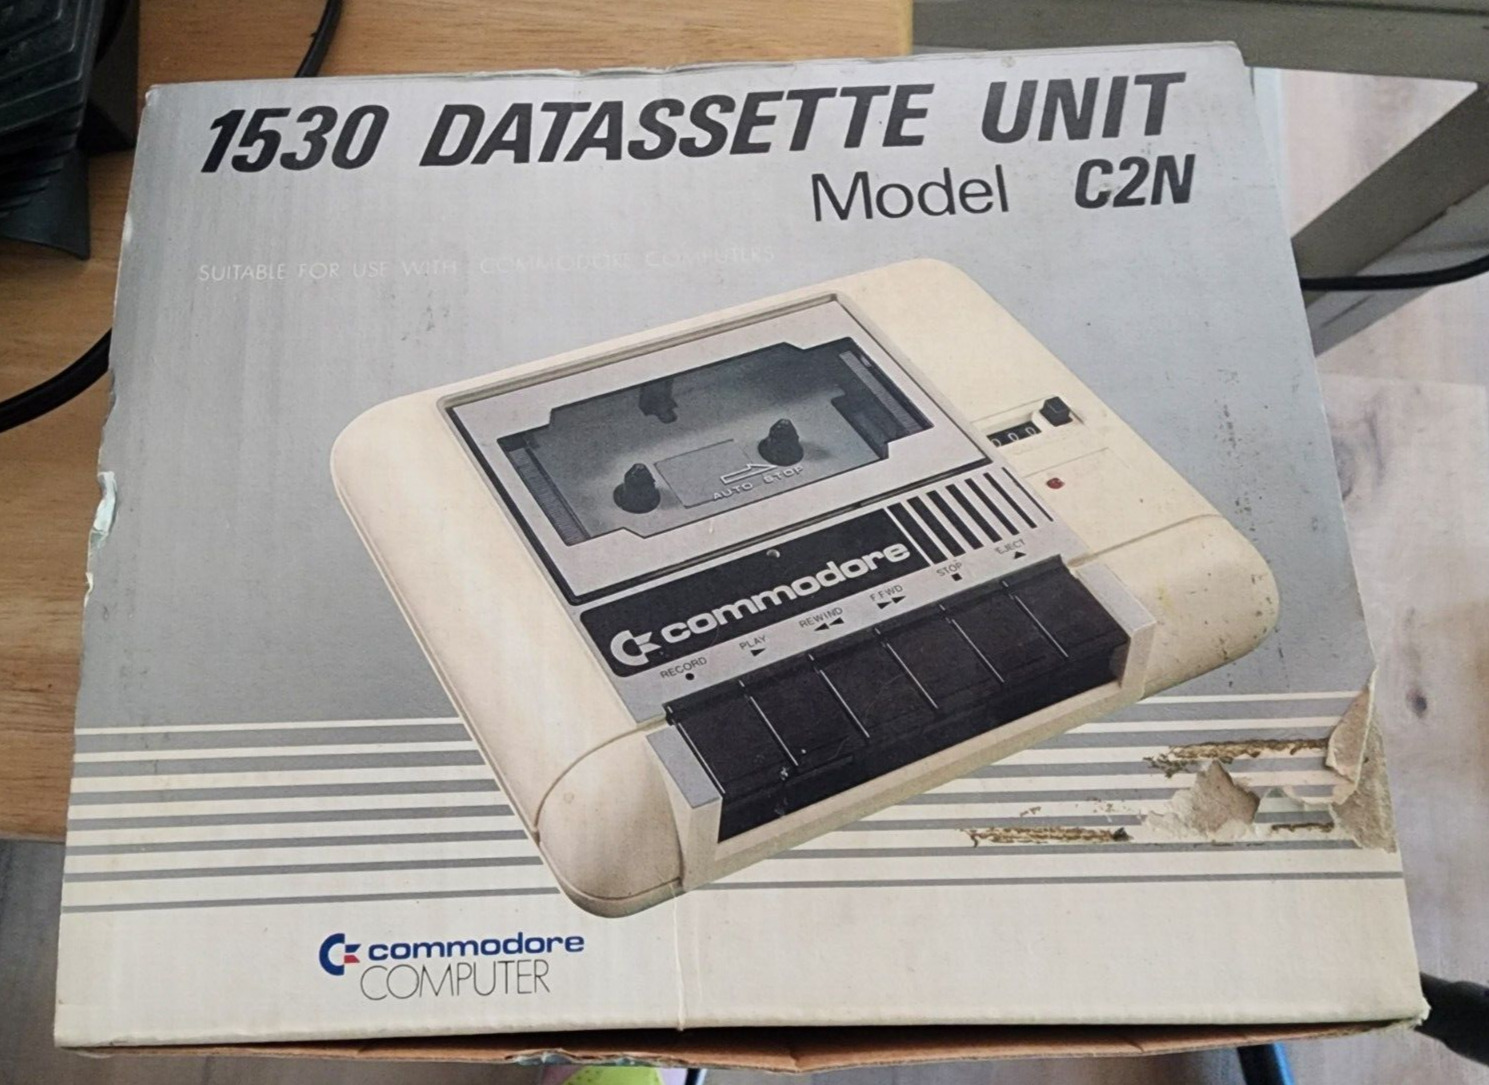 Commodore 64 C2N Datasette Cassette Tape Player Recorder - 1530 Datasette Unit